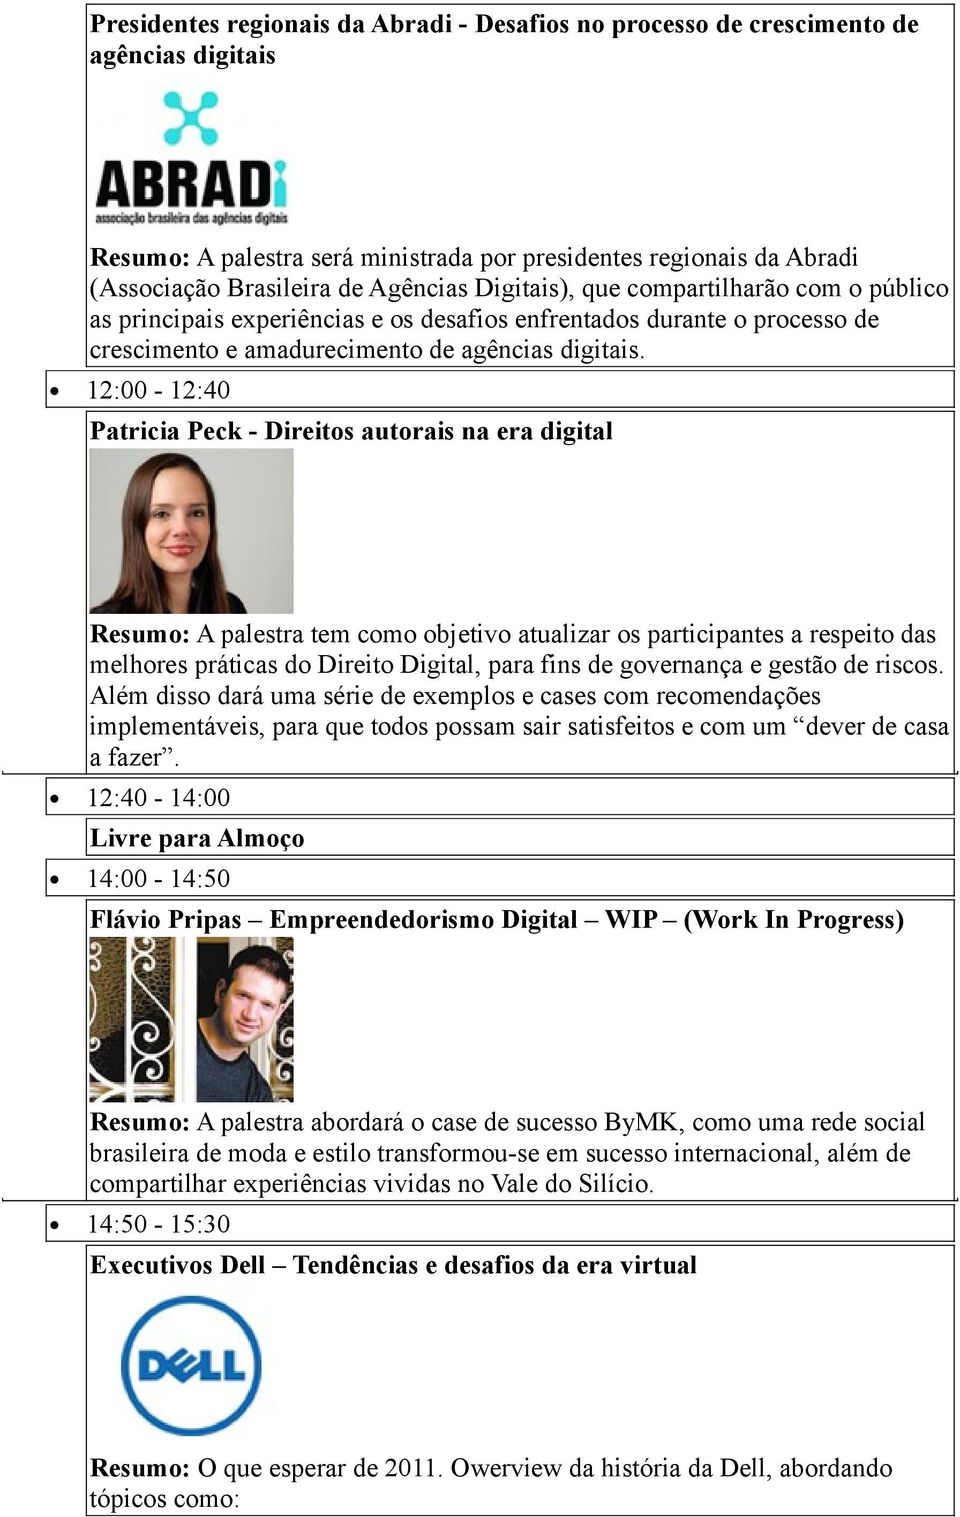 12:00-12:40 Patricia Peck - Direitos autorais na era digital Resumo: A palestra tem como objetivo atualizar os participantes a respeito das melhores práticas do Direito Digital, para fins de